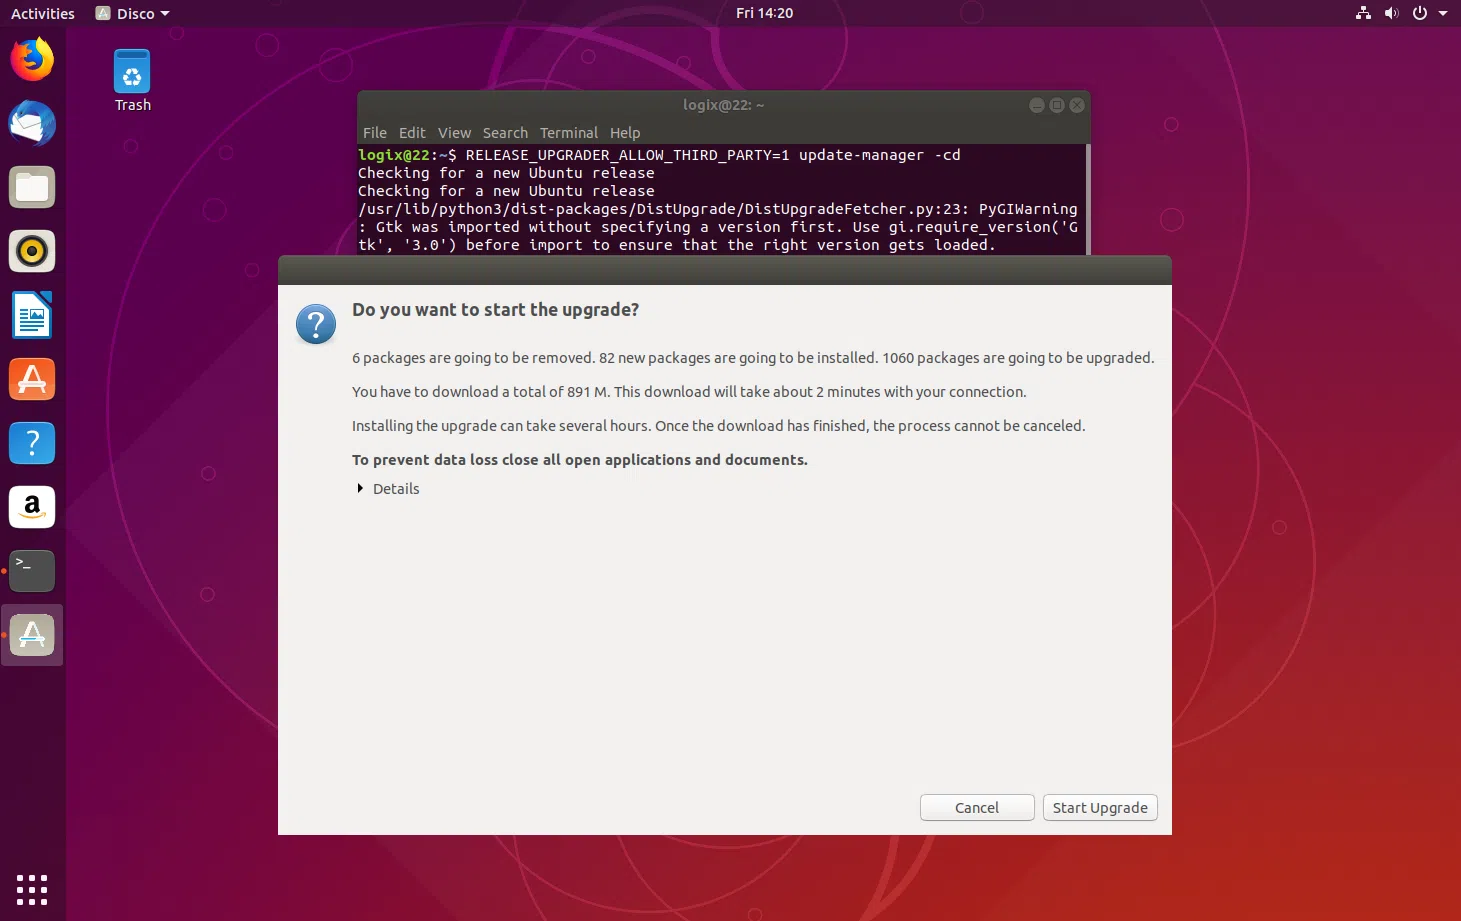 Atualização do Ubuntu 18.10 Cosmic para 19.04 Disco Dingo